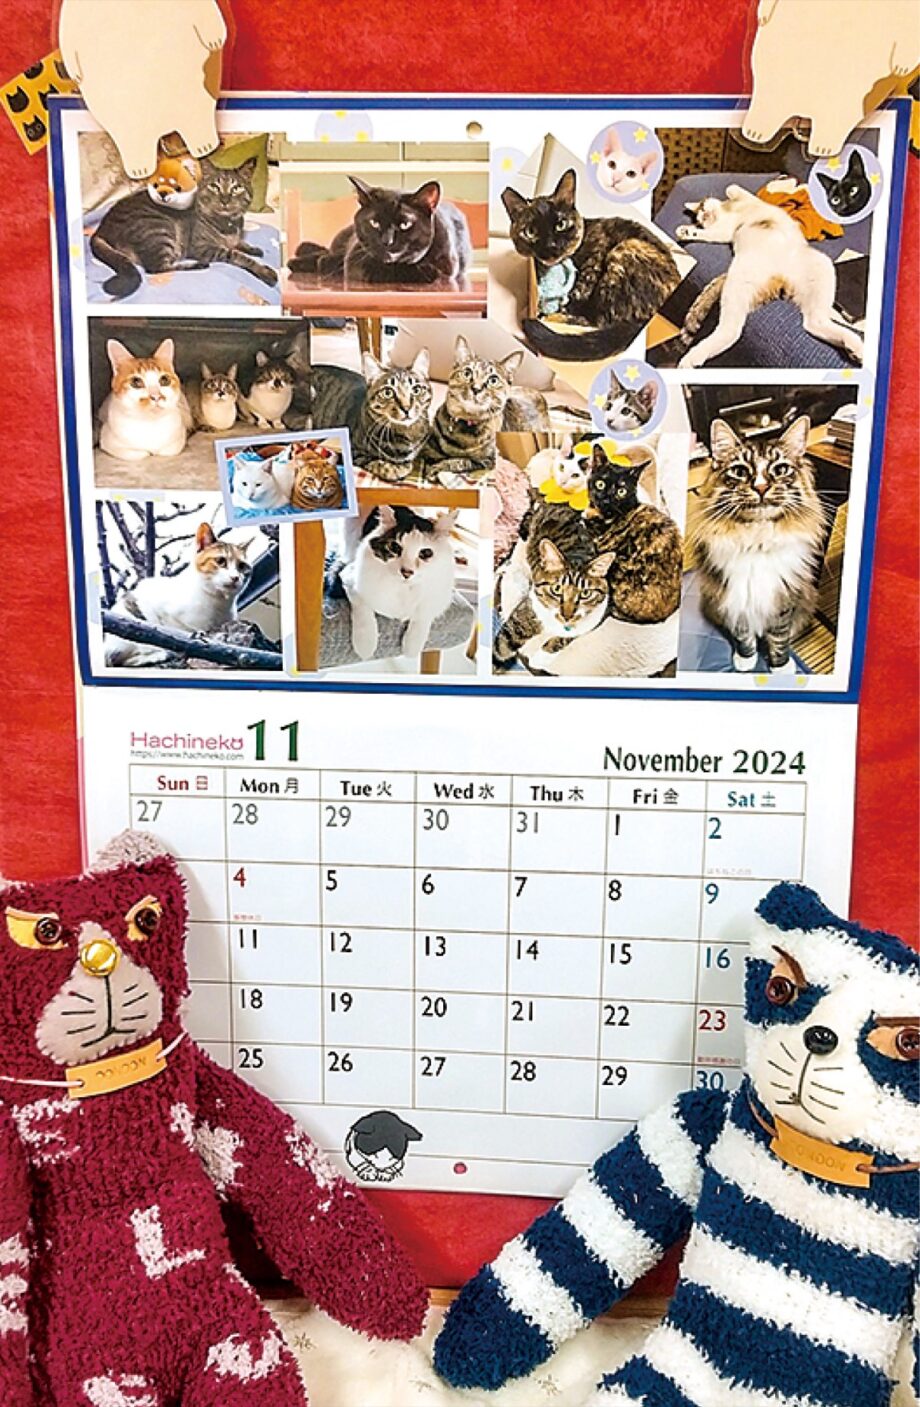 【保護猫の医療費になる】保護猫活動を行う八王子市内団体「はちねこ」がチャリティカレンダー販売